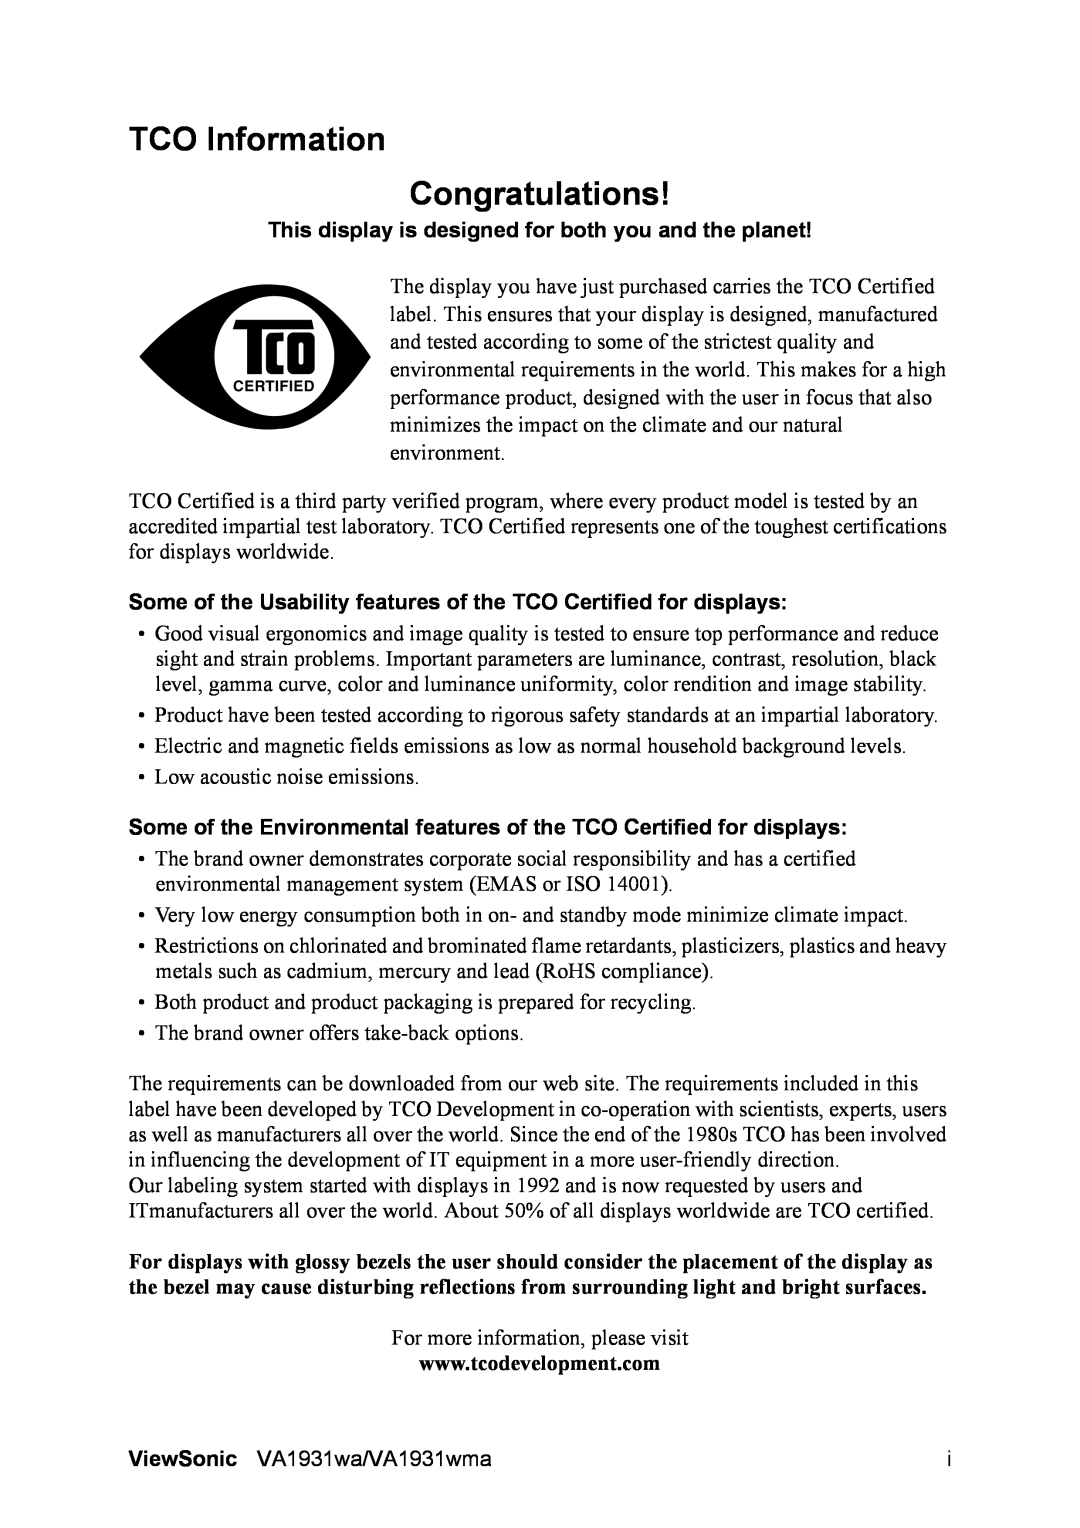 ViewSonic VS13208 warranty TCO Information Congratulations 